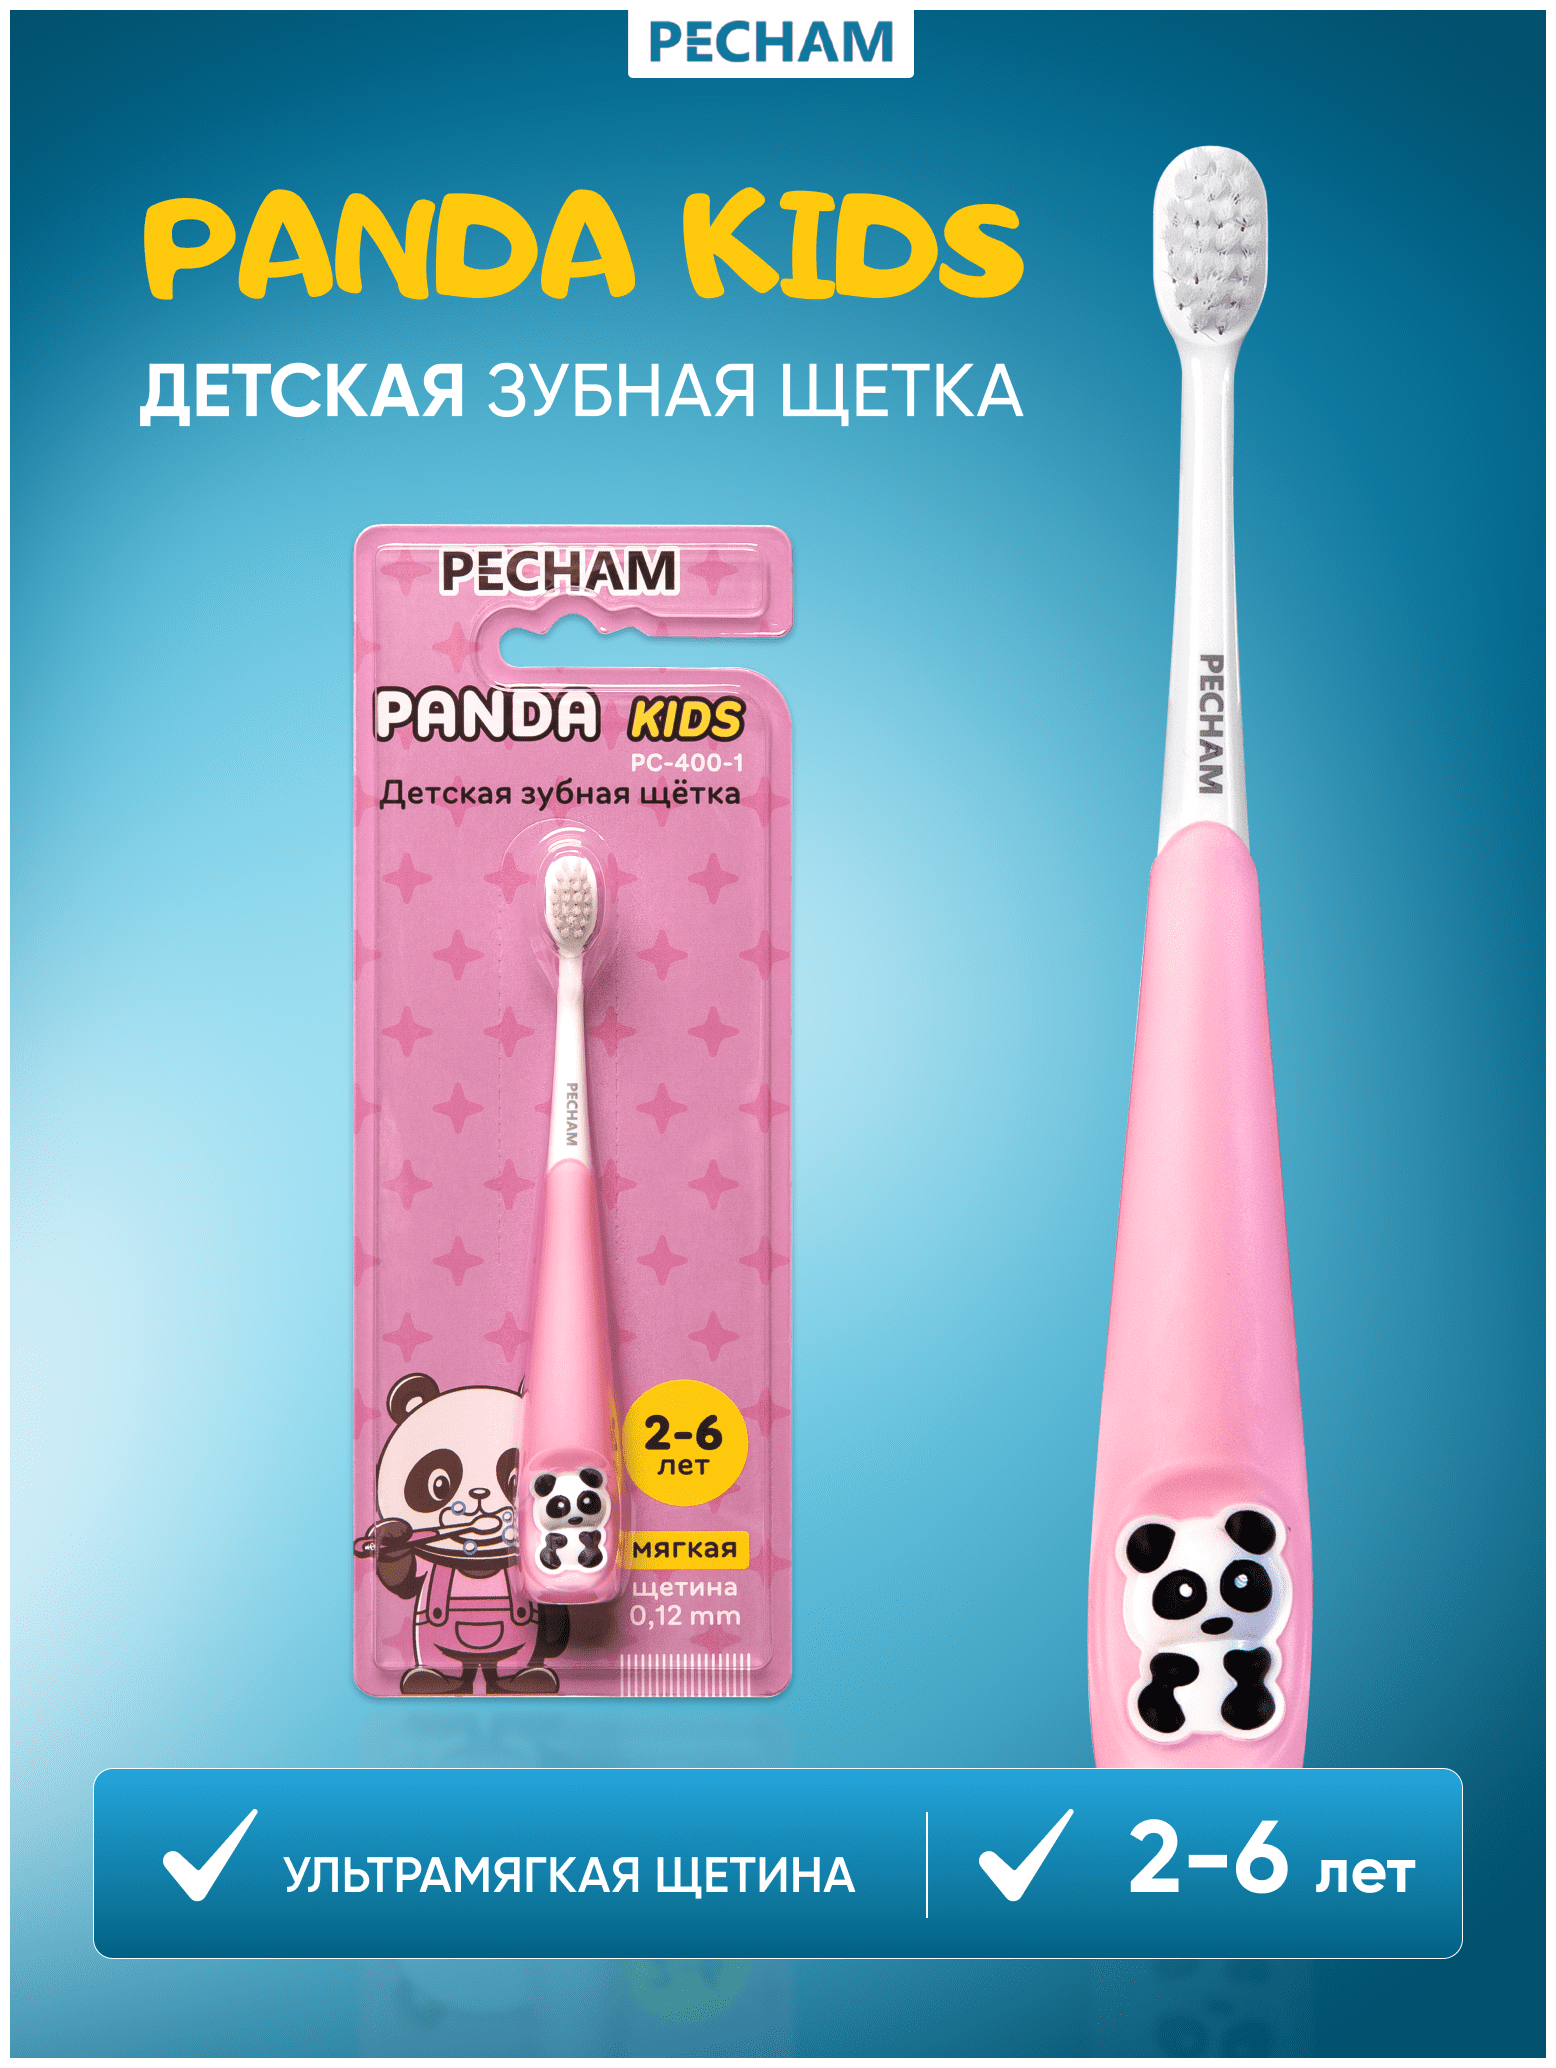 Детская зубная щетка PECHAM Panda Kids PC-400 для детей 2-6 лет